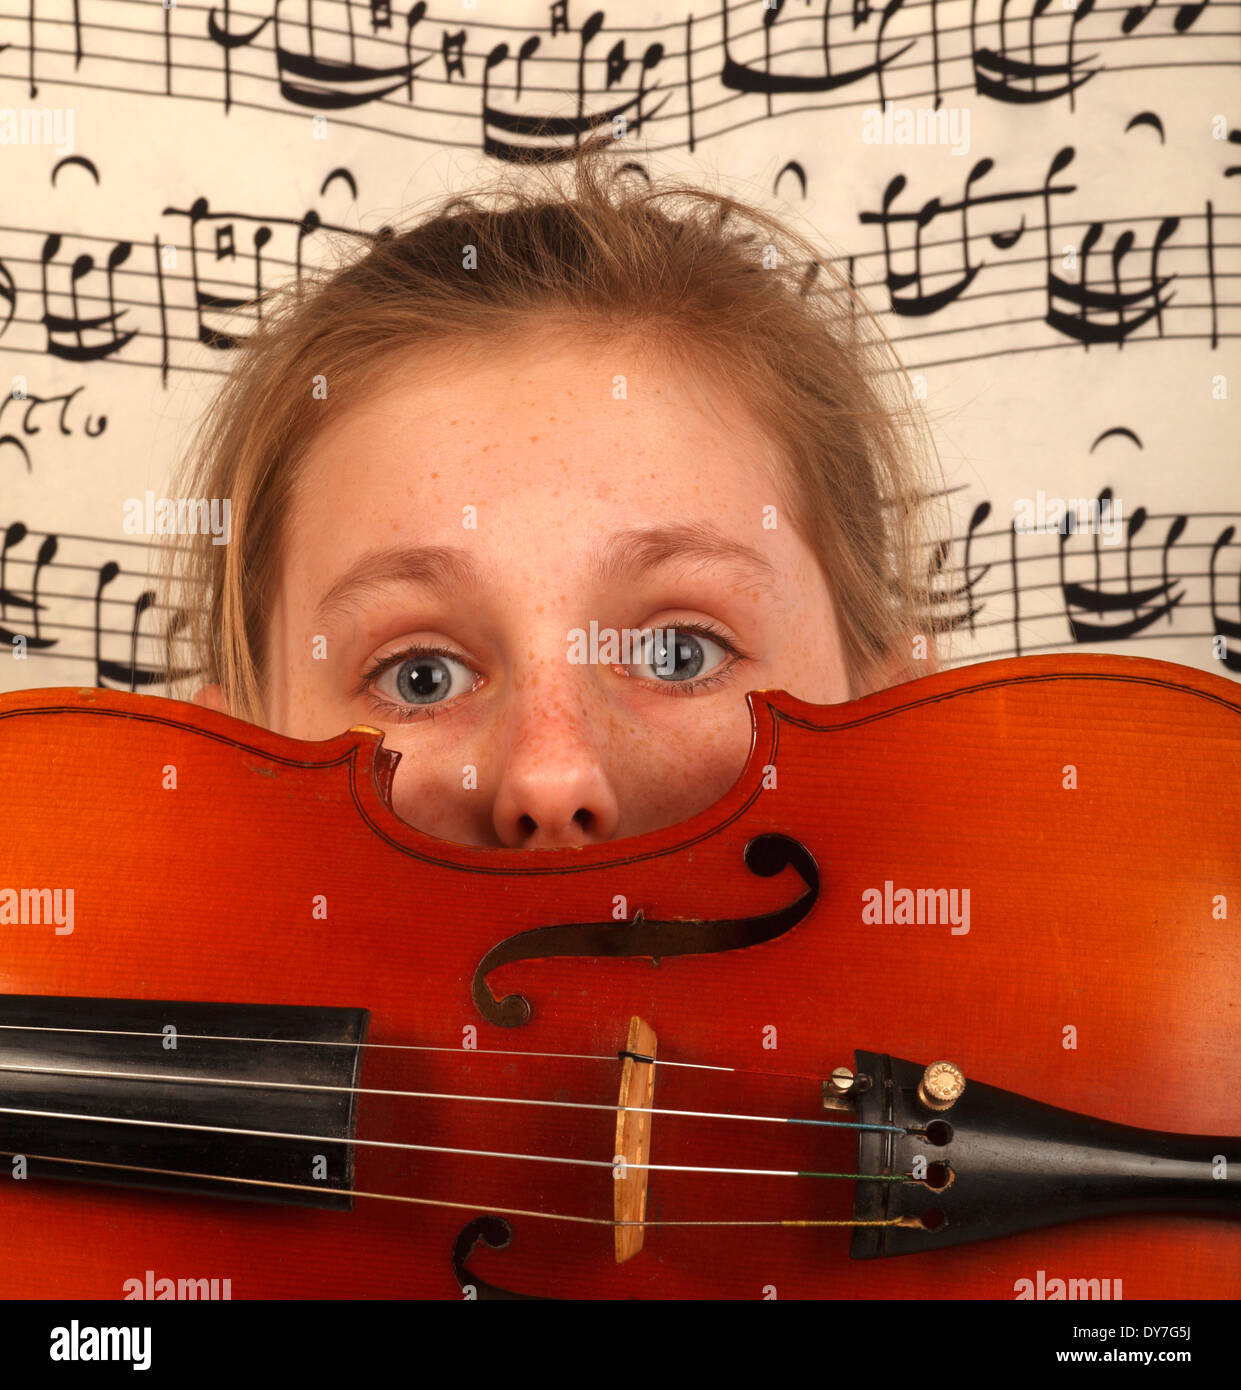 Venez découvrir le monde de la musique pour enfants Banque D'Images